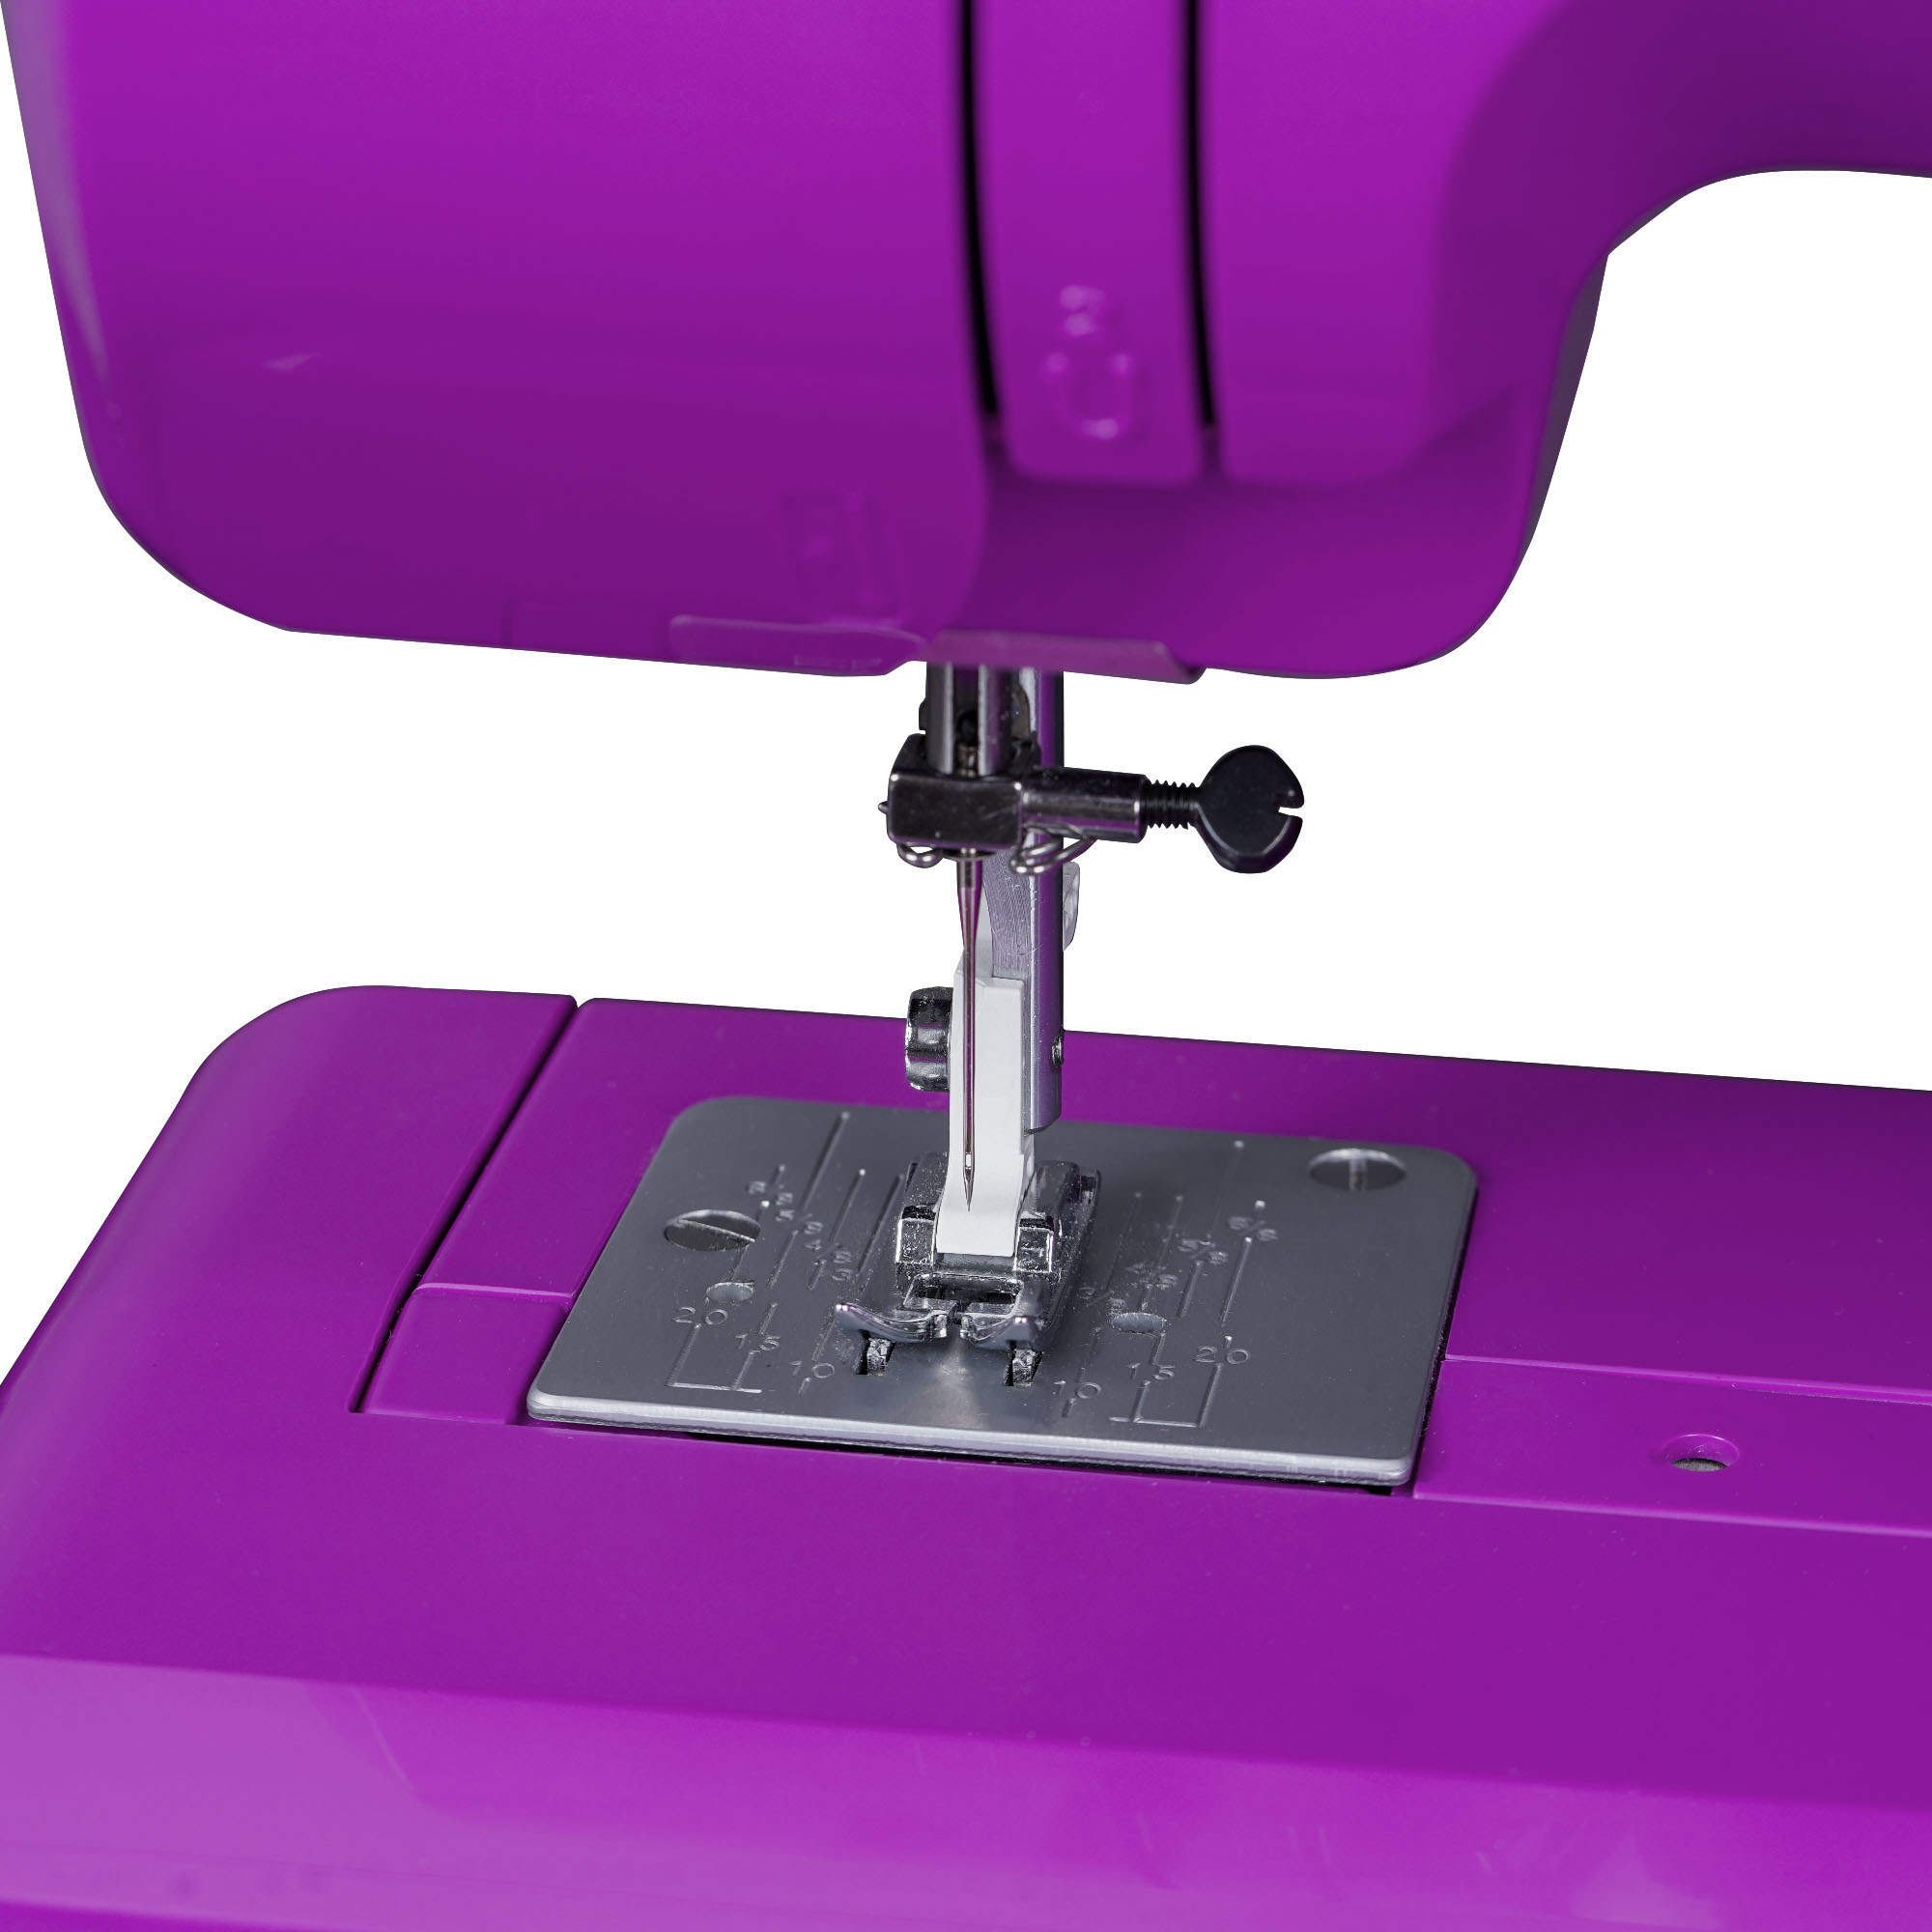 Janome Purple Majesty Sewing Machine